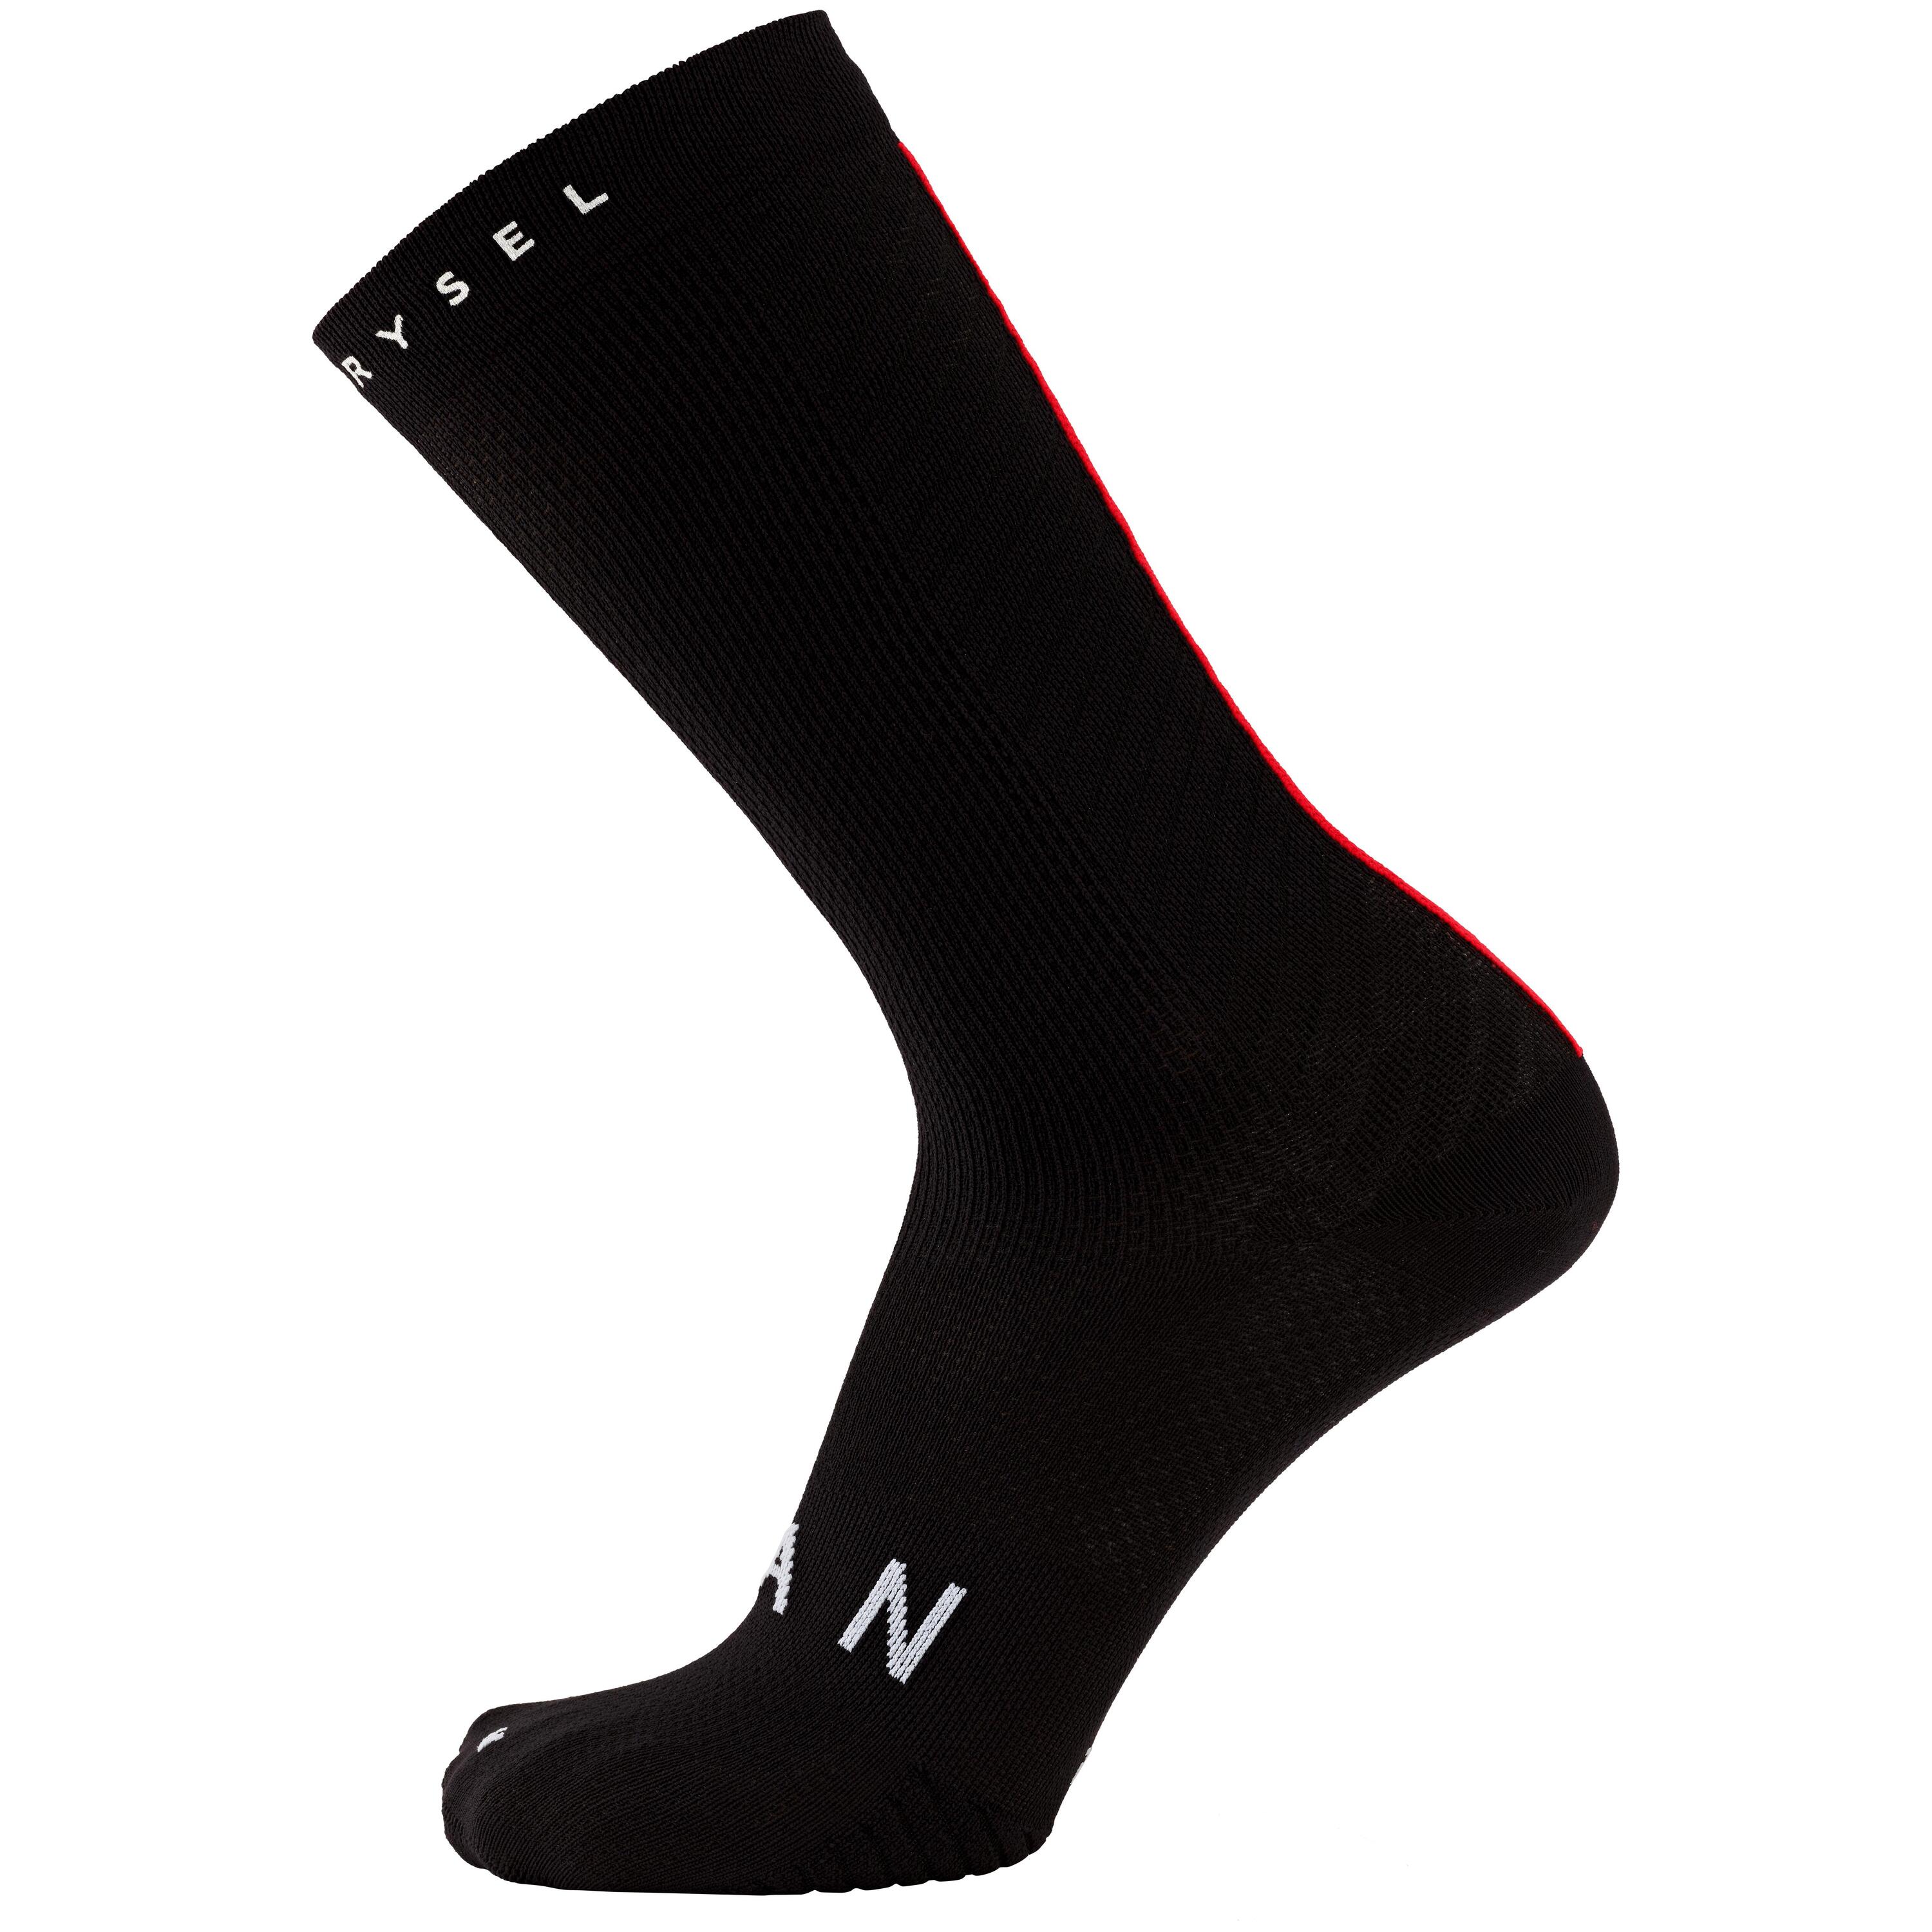 Cofidis Replica Road Cycling Socks - Black 3/3